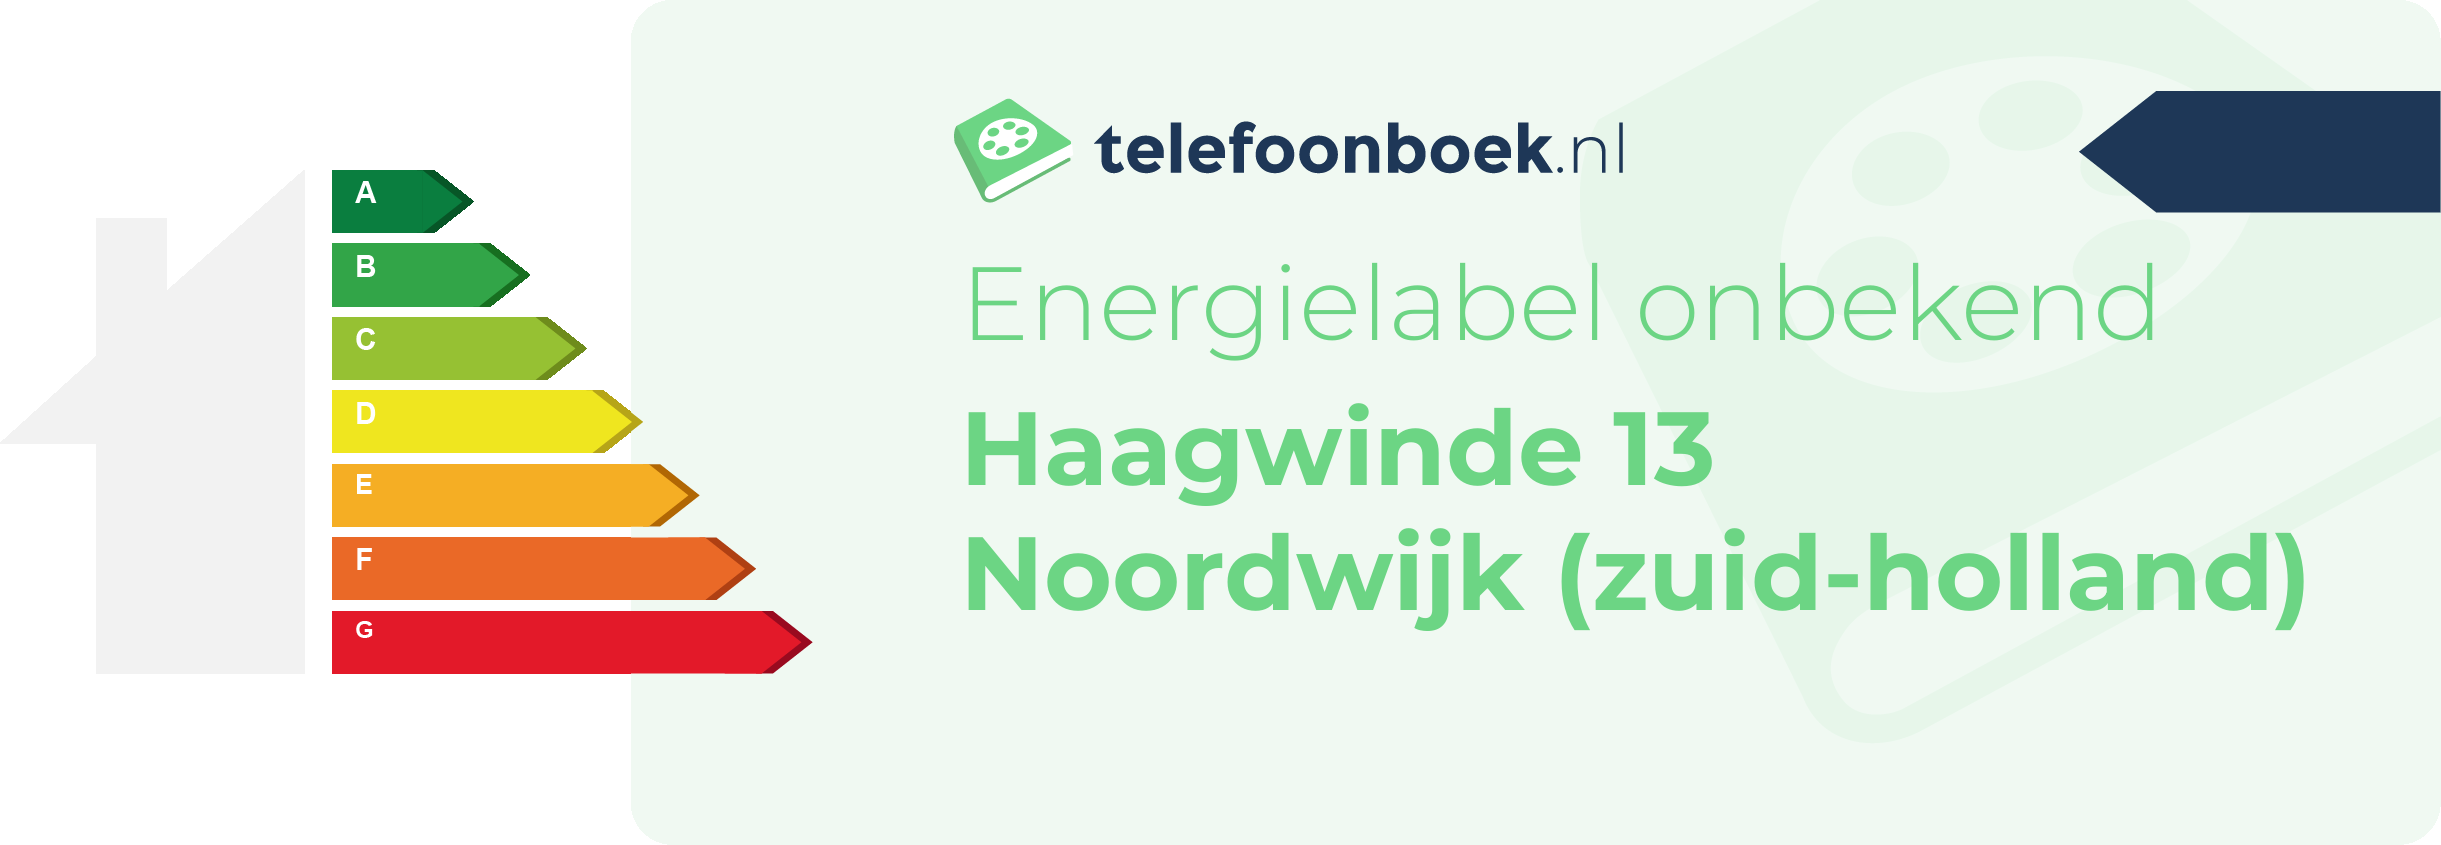 Energielabel Haagwinde 13 Noordwijk (Zuid-Holland)